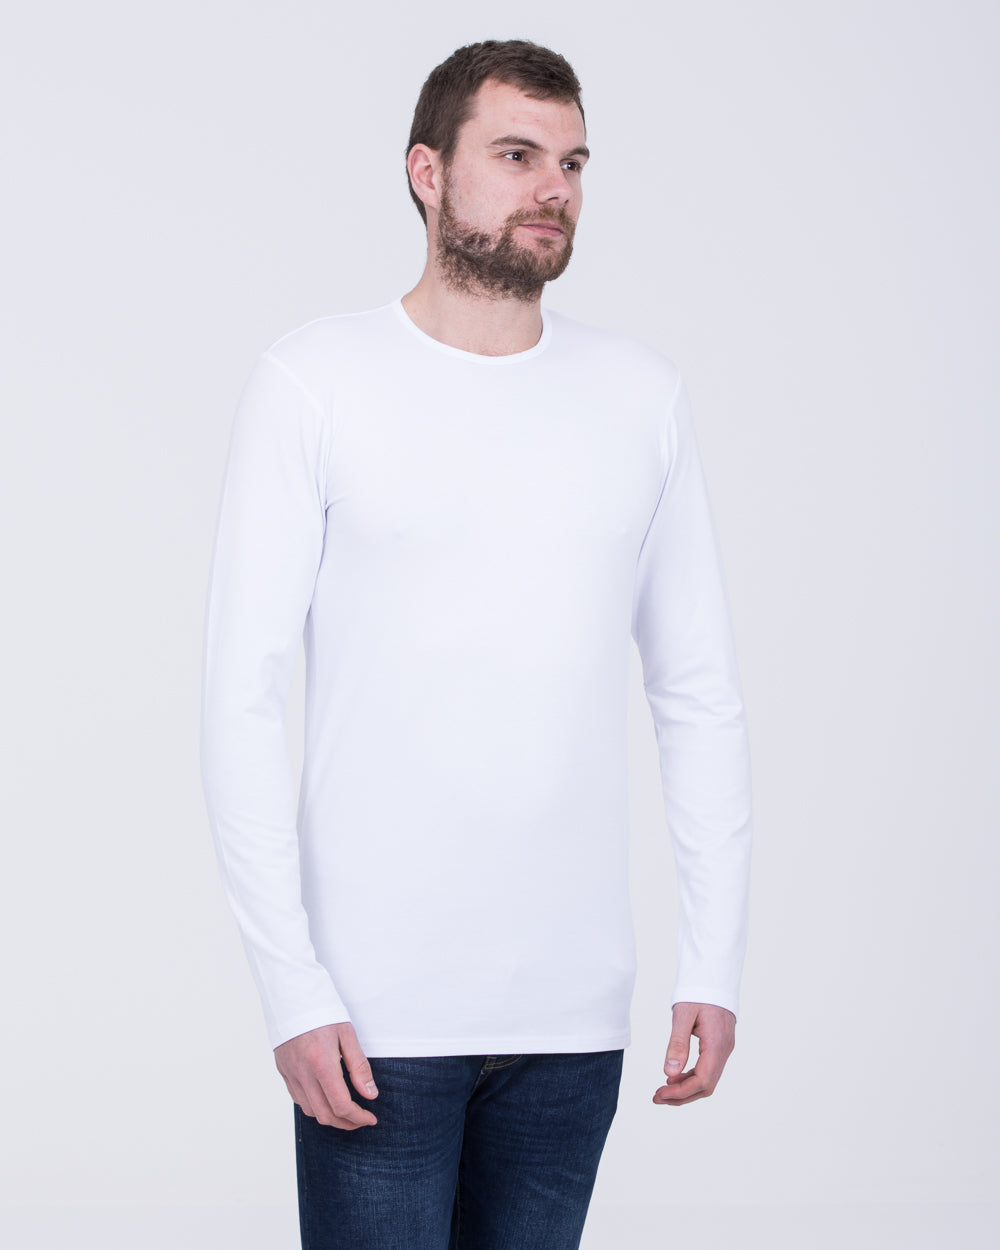 Girav London Long Sleeve Tall T-Shirt (white)